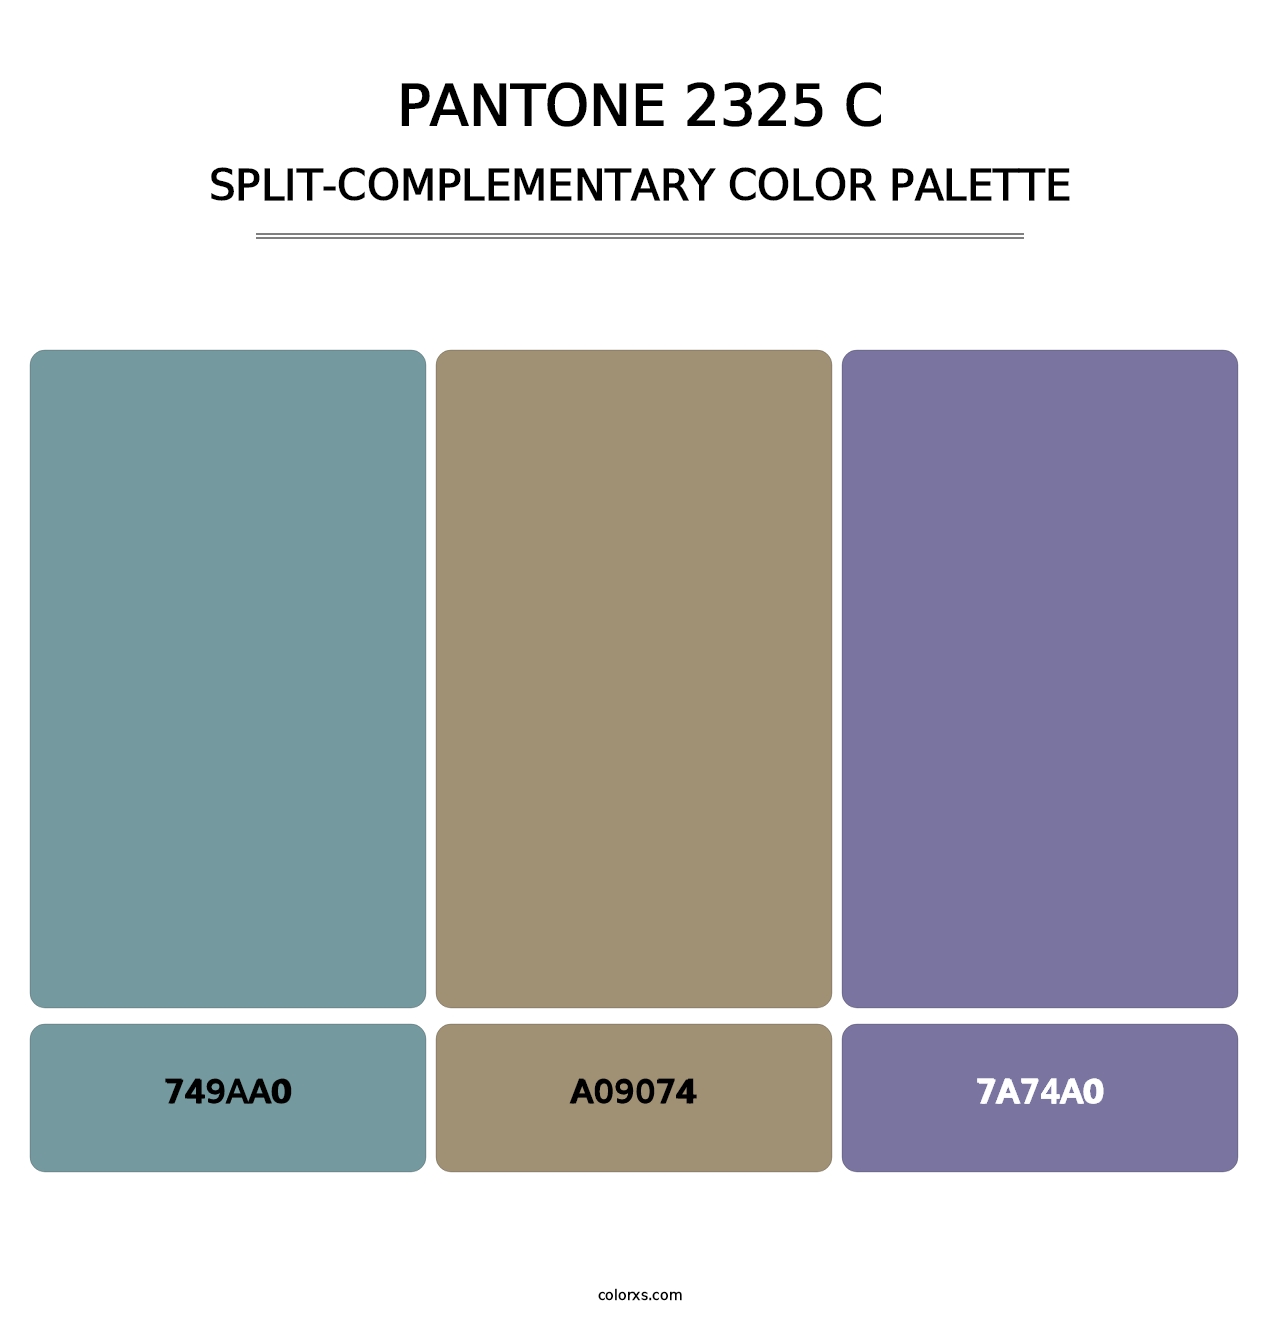 PANTONE 2325 C - Split-Complementary Color Palette